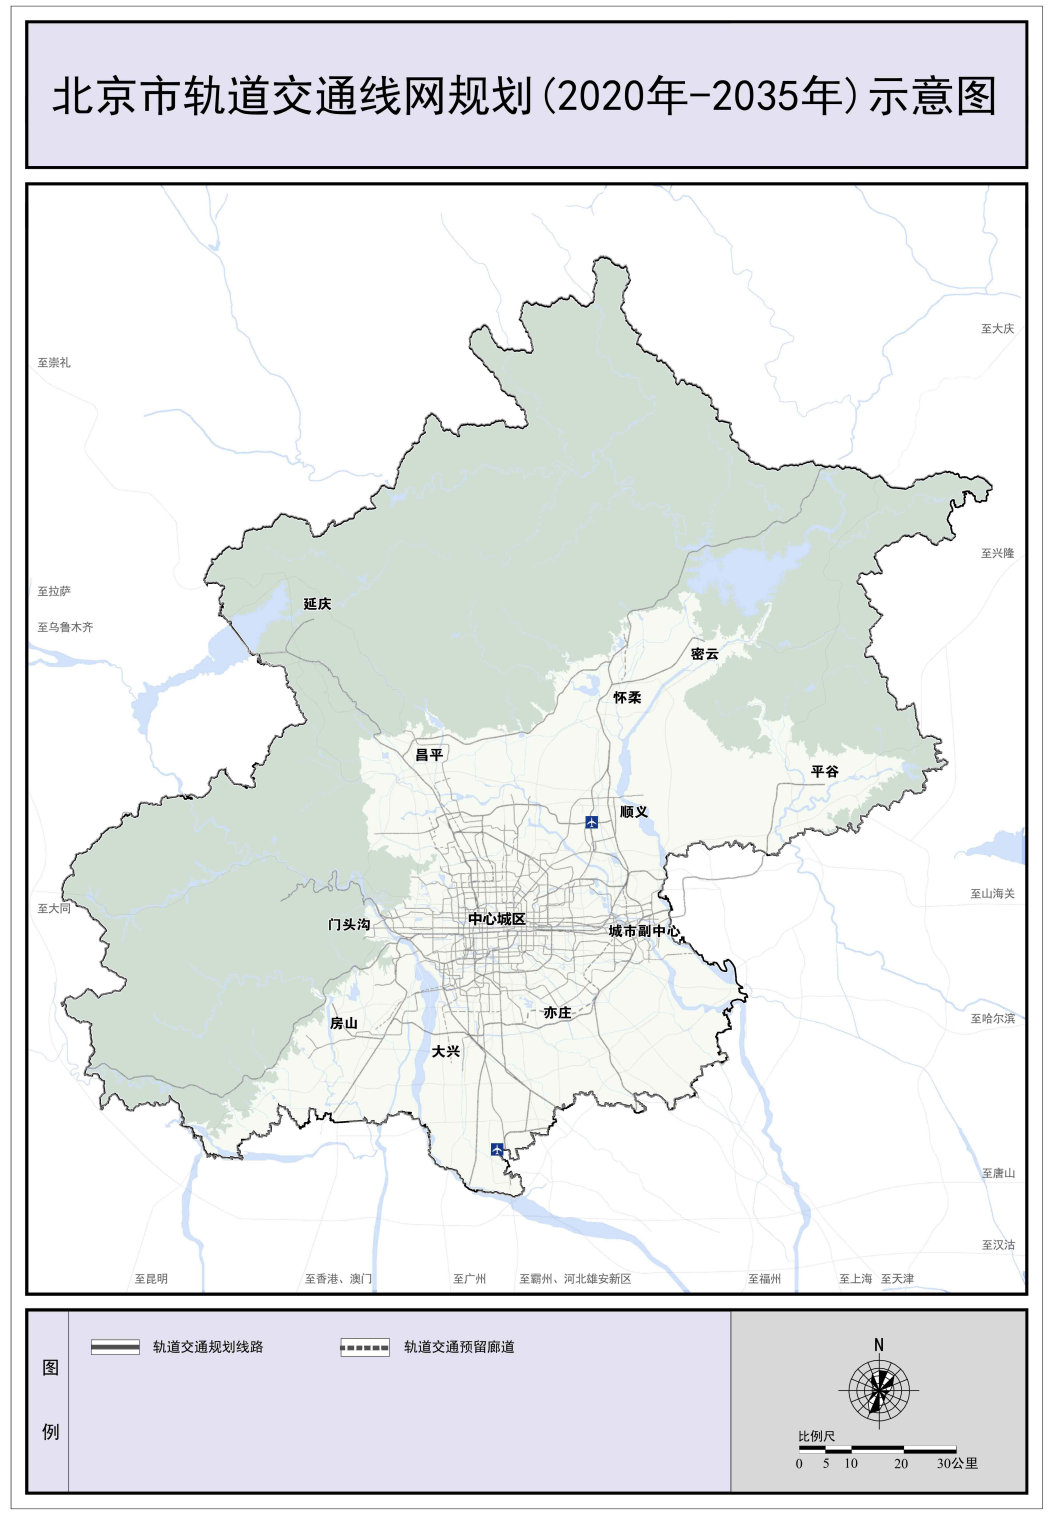 北京轨道交通线网规划公布：总规模约2673公里 城市轨道交通约1578公里